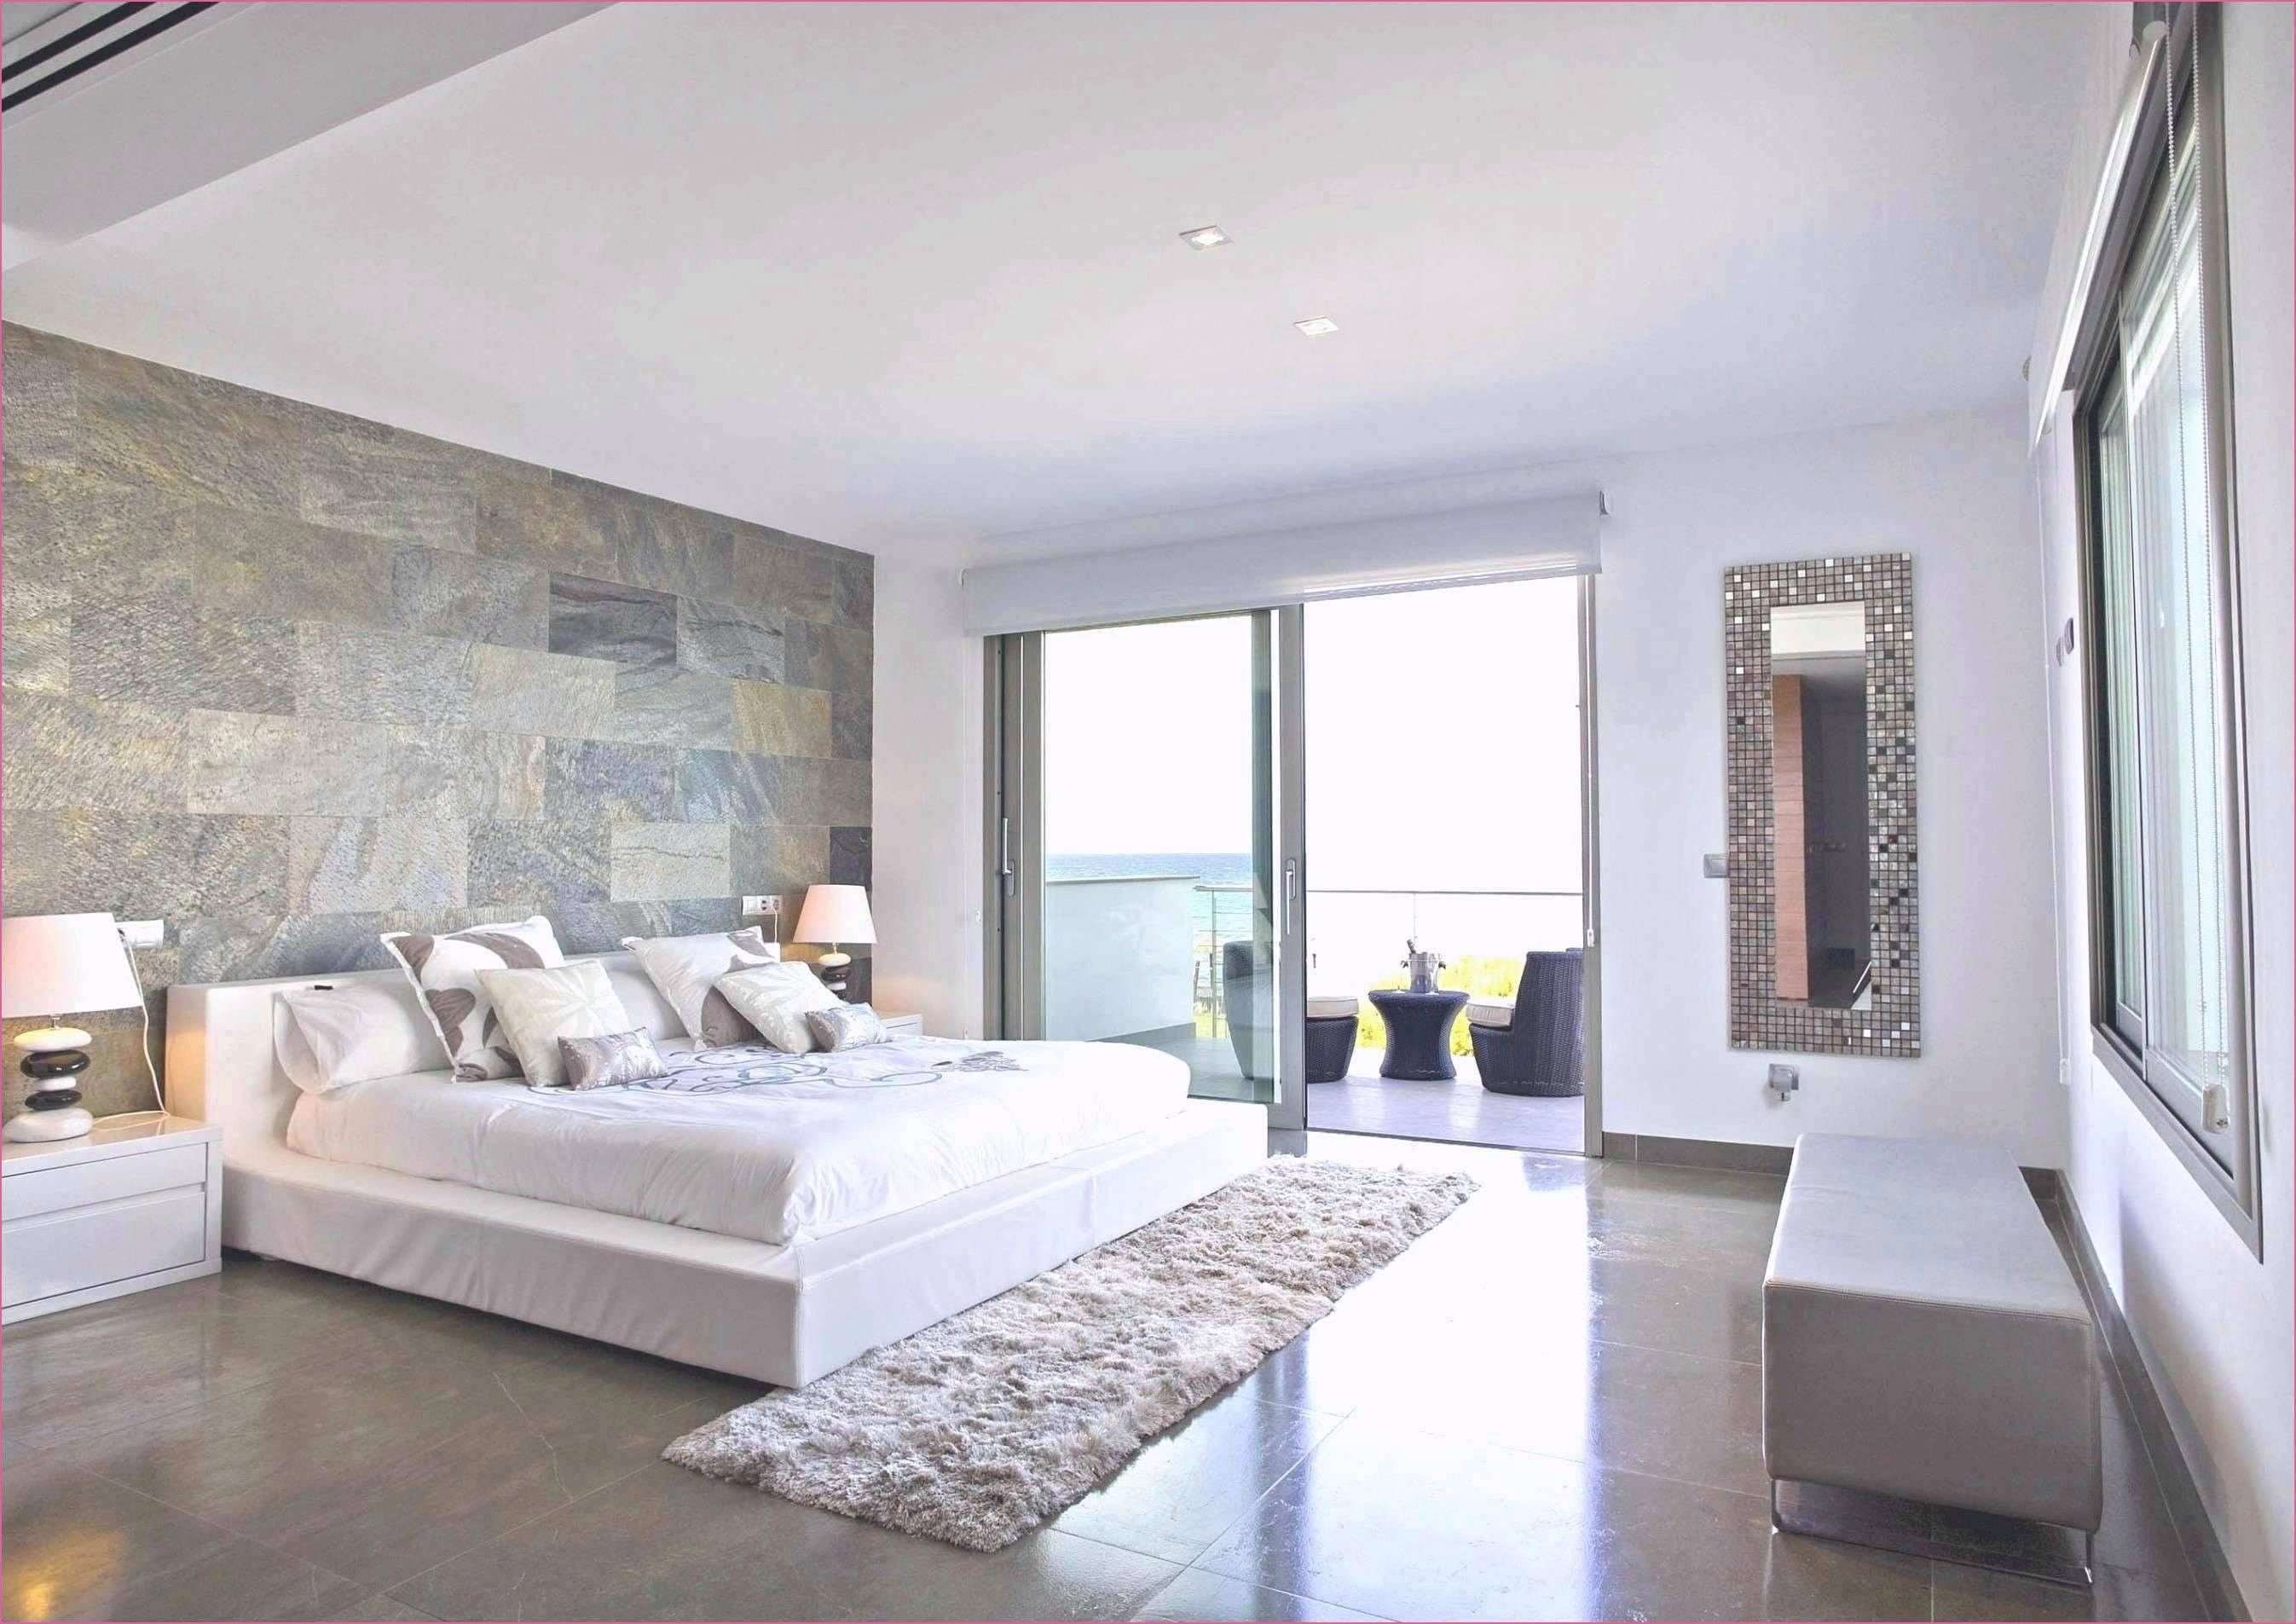 Wand Muster Streifen In 2020 Modern Bedroom Design Modern Home Interior Design Home Interior Design